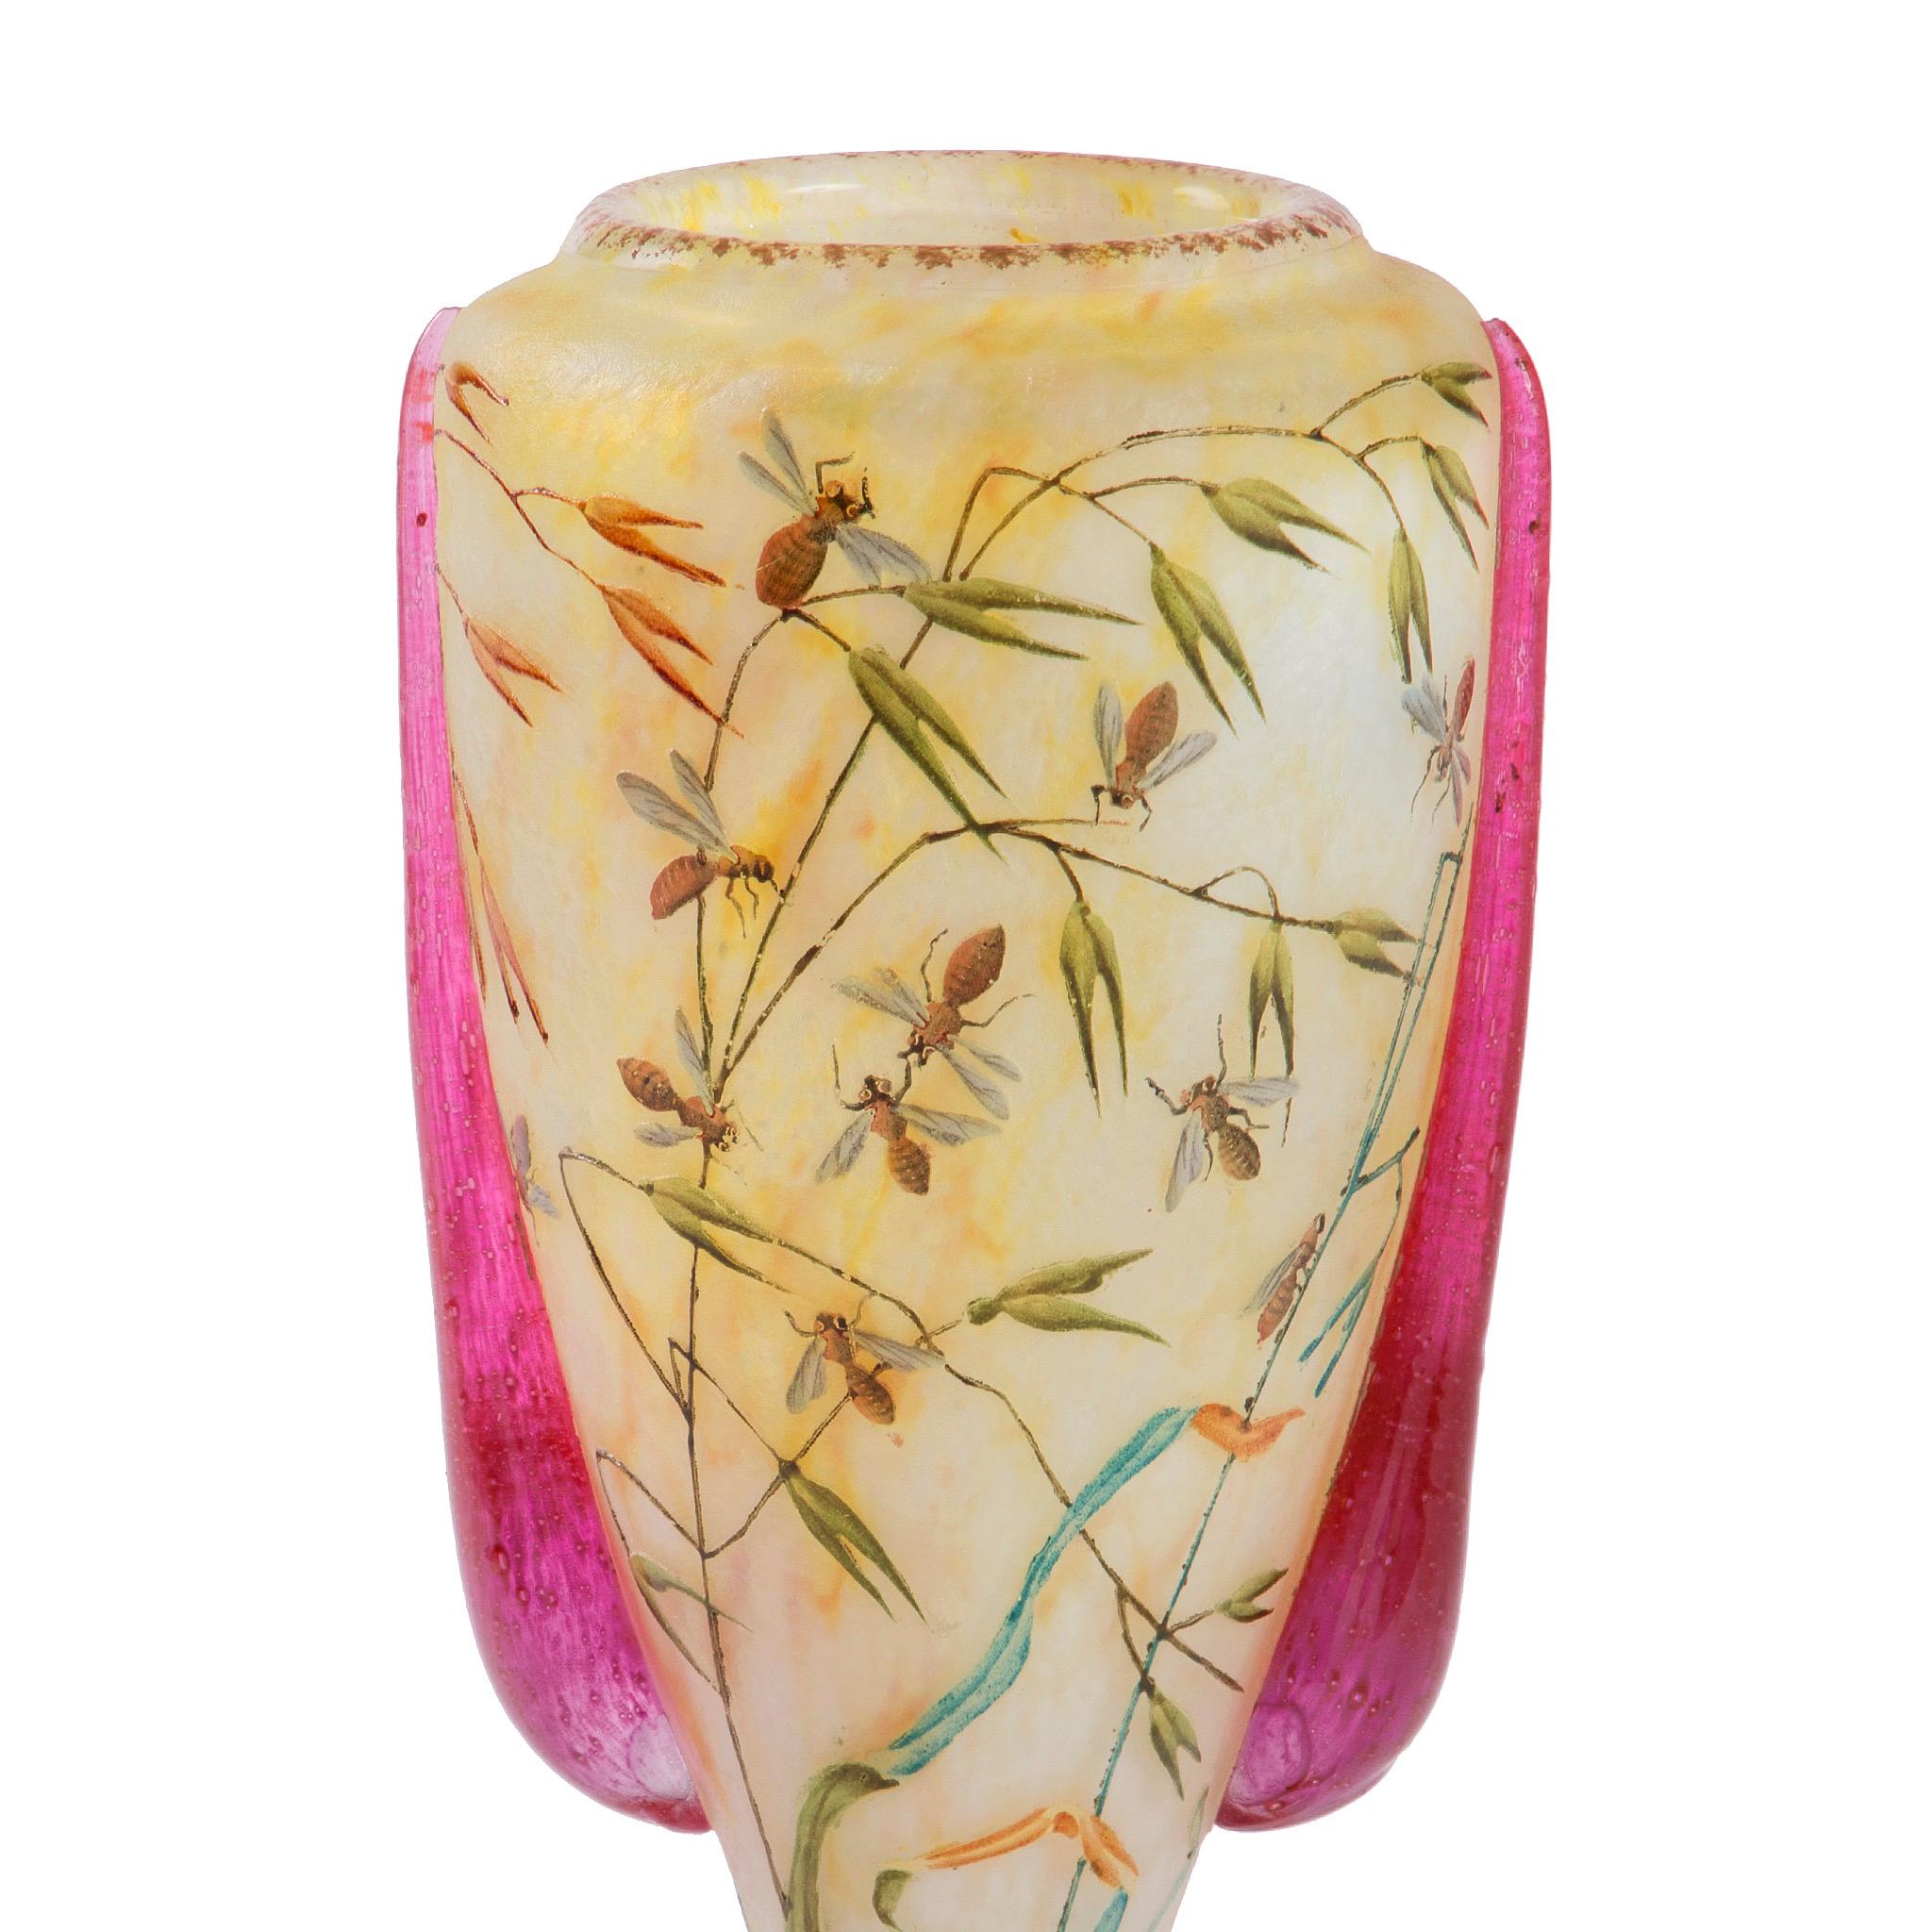 Ce vase en verre Art nouveau de Daum présente des anses aux tons rubis et des abeilles bourdonnant parmi les feuillages aux couleurs variées du récipient. Le vase utilise la célèbre technique du Studio Daum qui consiste à souffler du verre